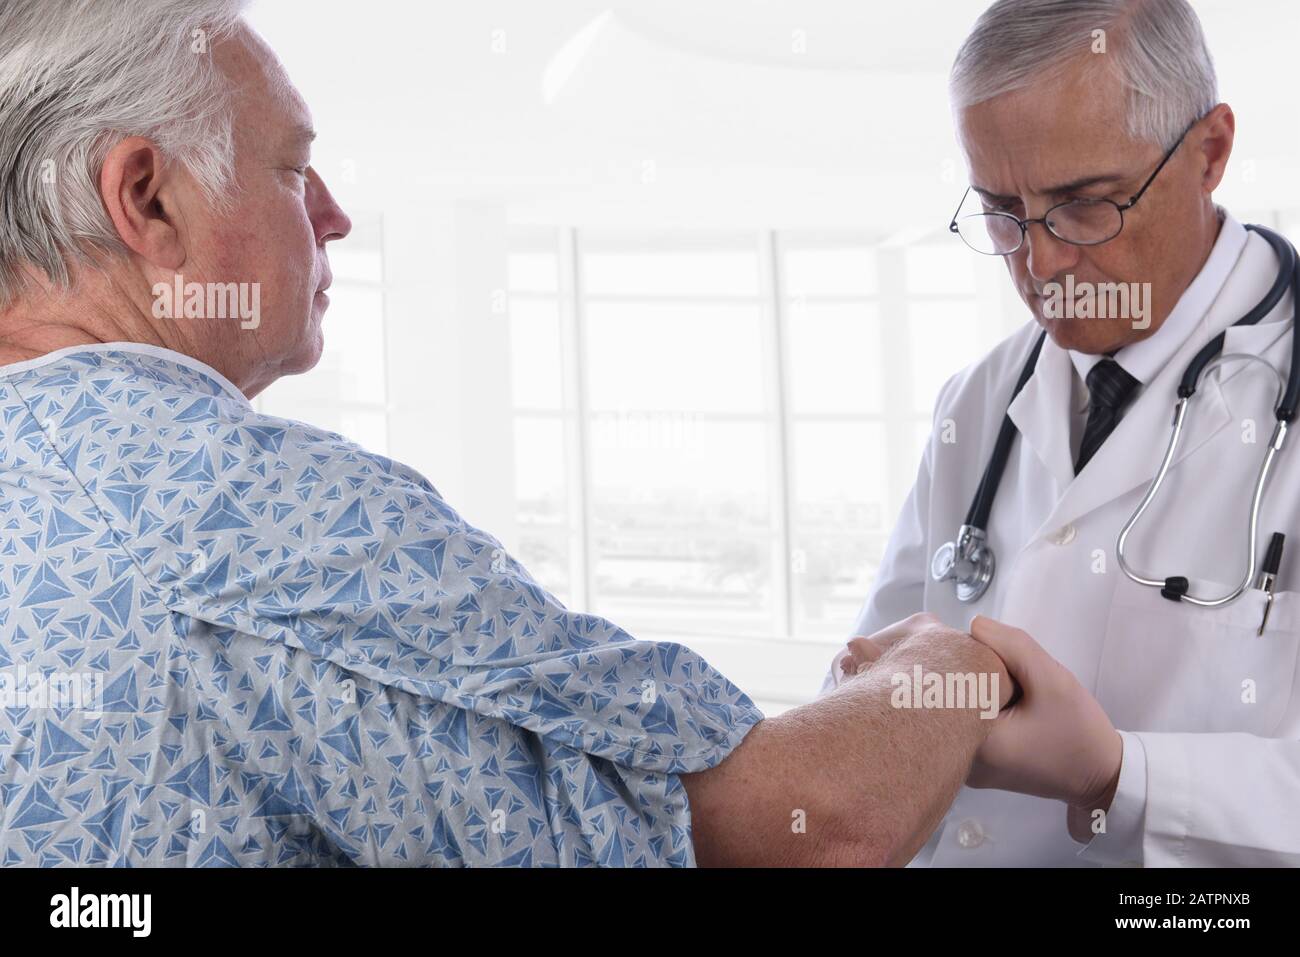 Nahaufnahme eines älteren männlichen Patienten, der einen Krankenhauskeimen trägt, während ein Arzt seinen rechten Arm untersucht. Der Fokus liegt auf dem Patienten. Stockfoto